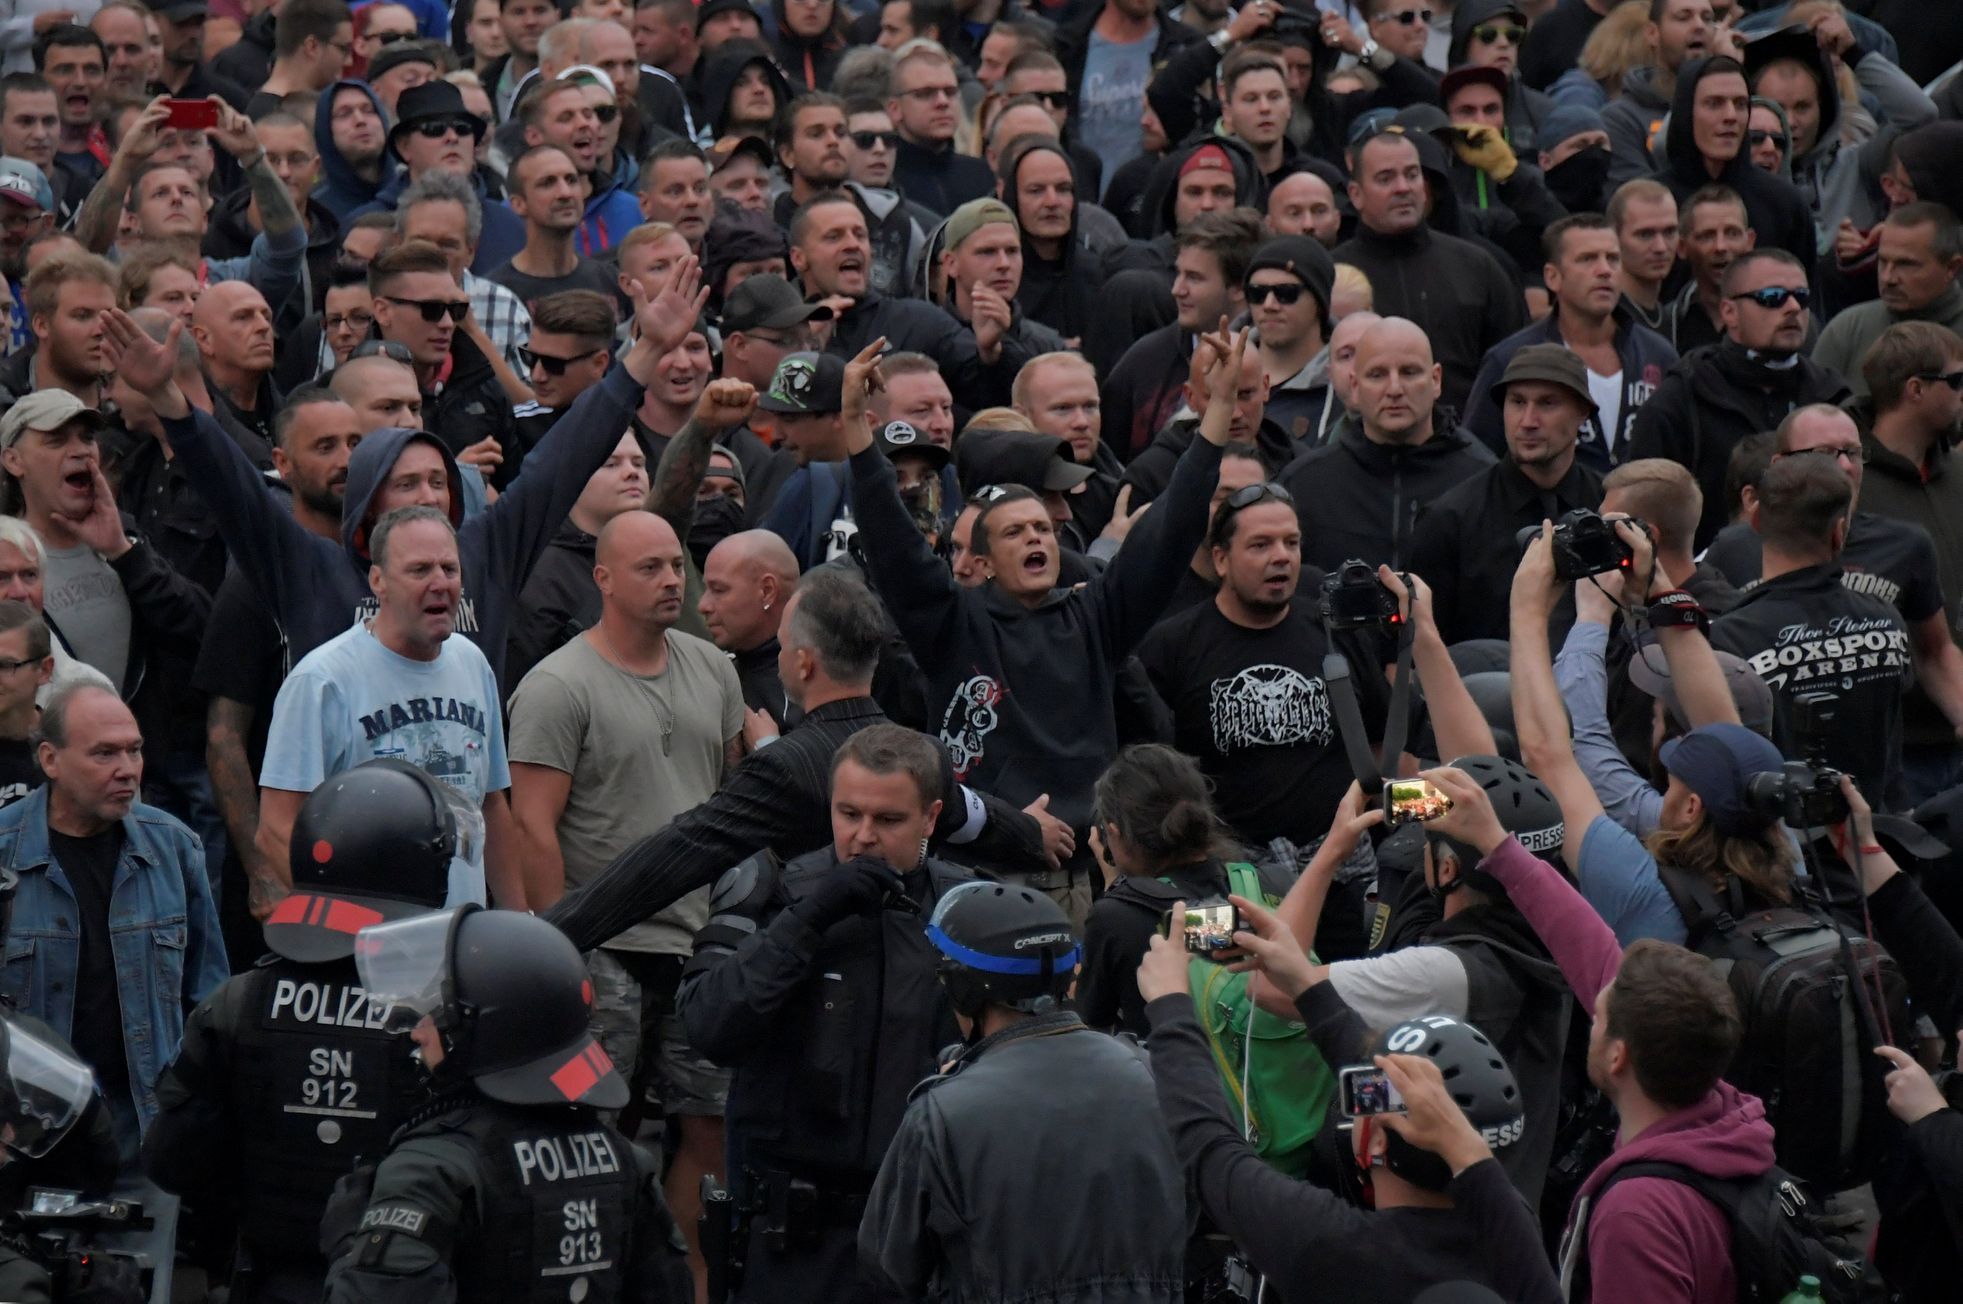 Německo demonstrace pravičáků v Chemnitz - Saské Kamenici